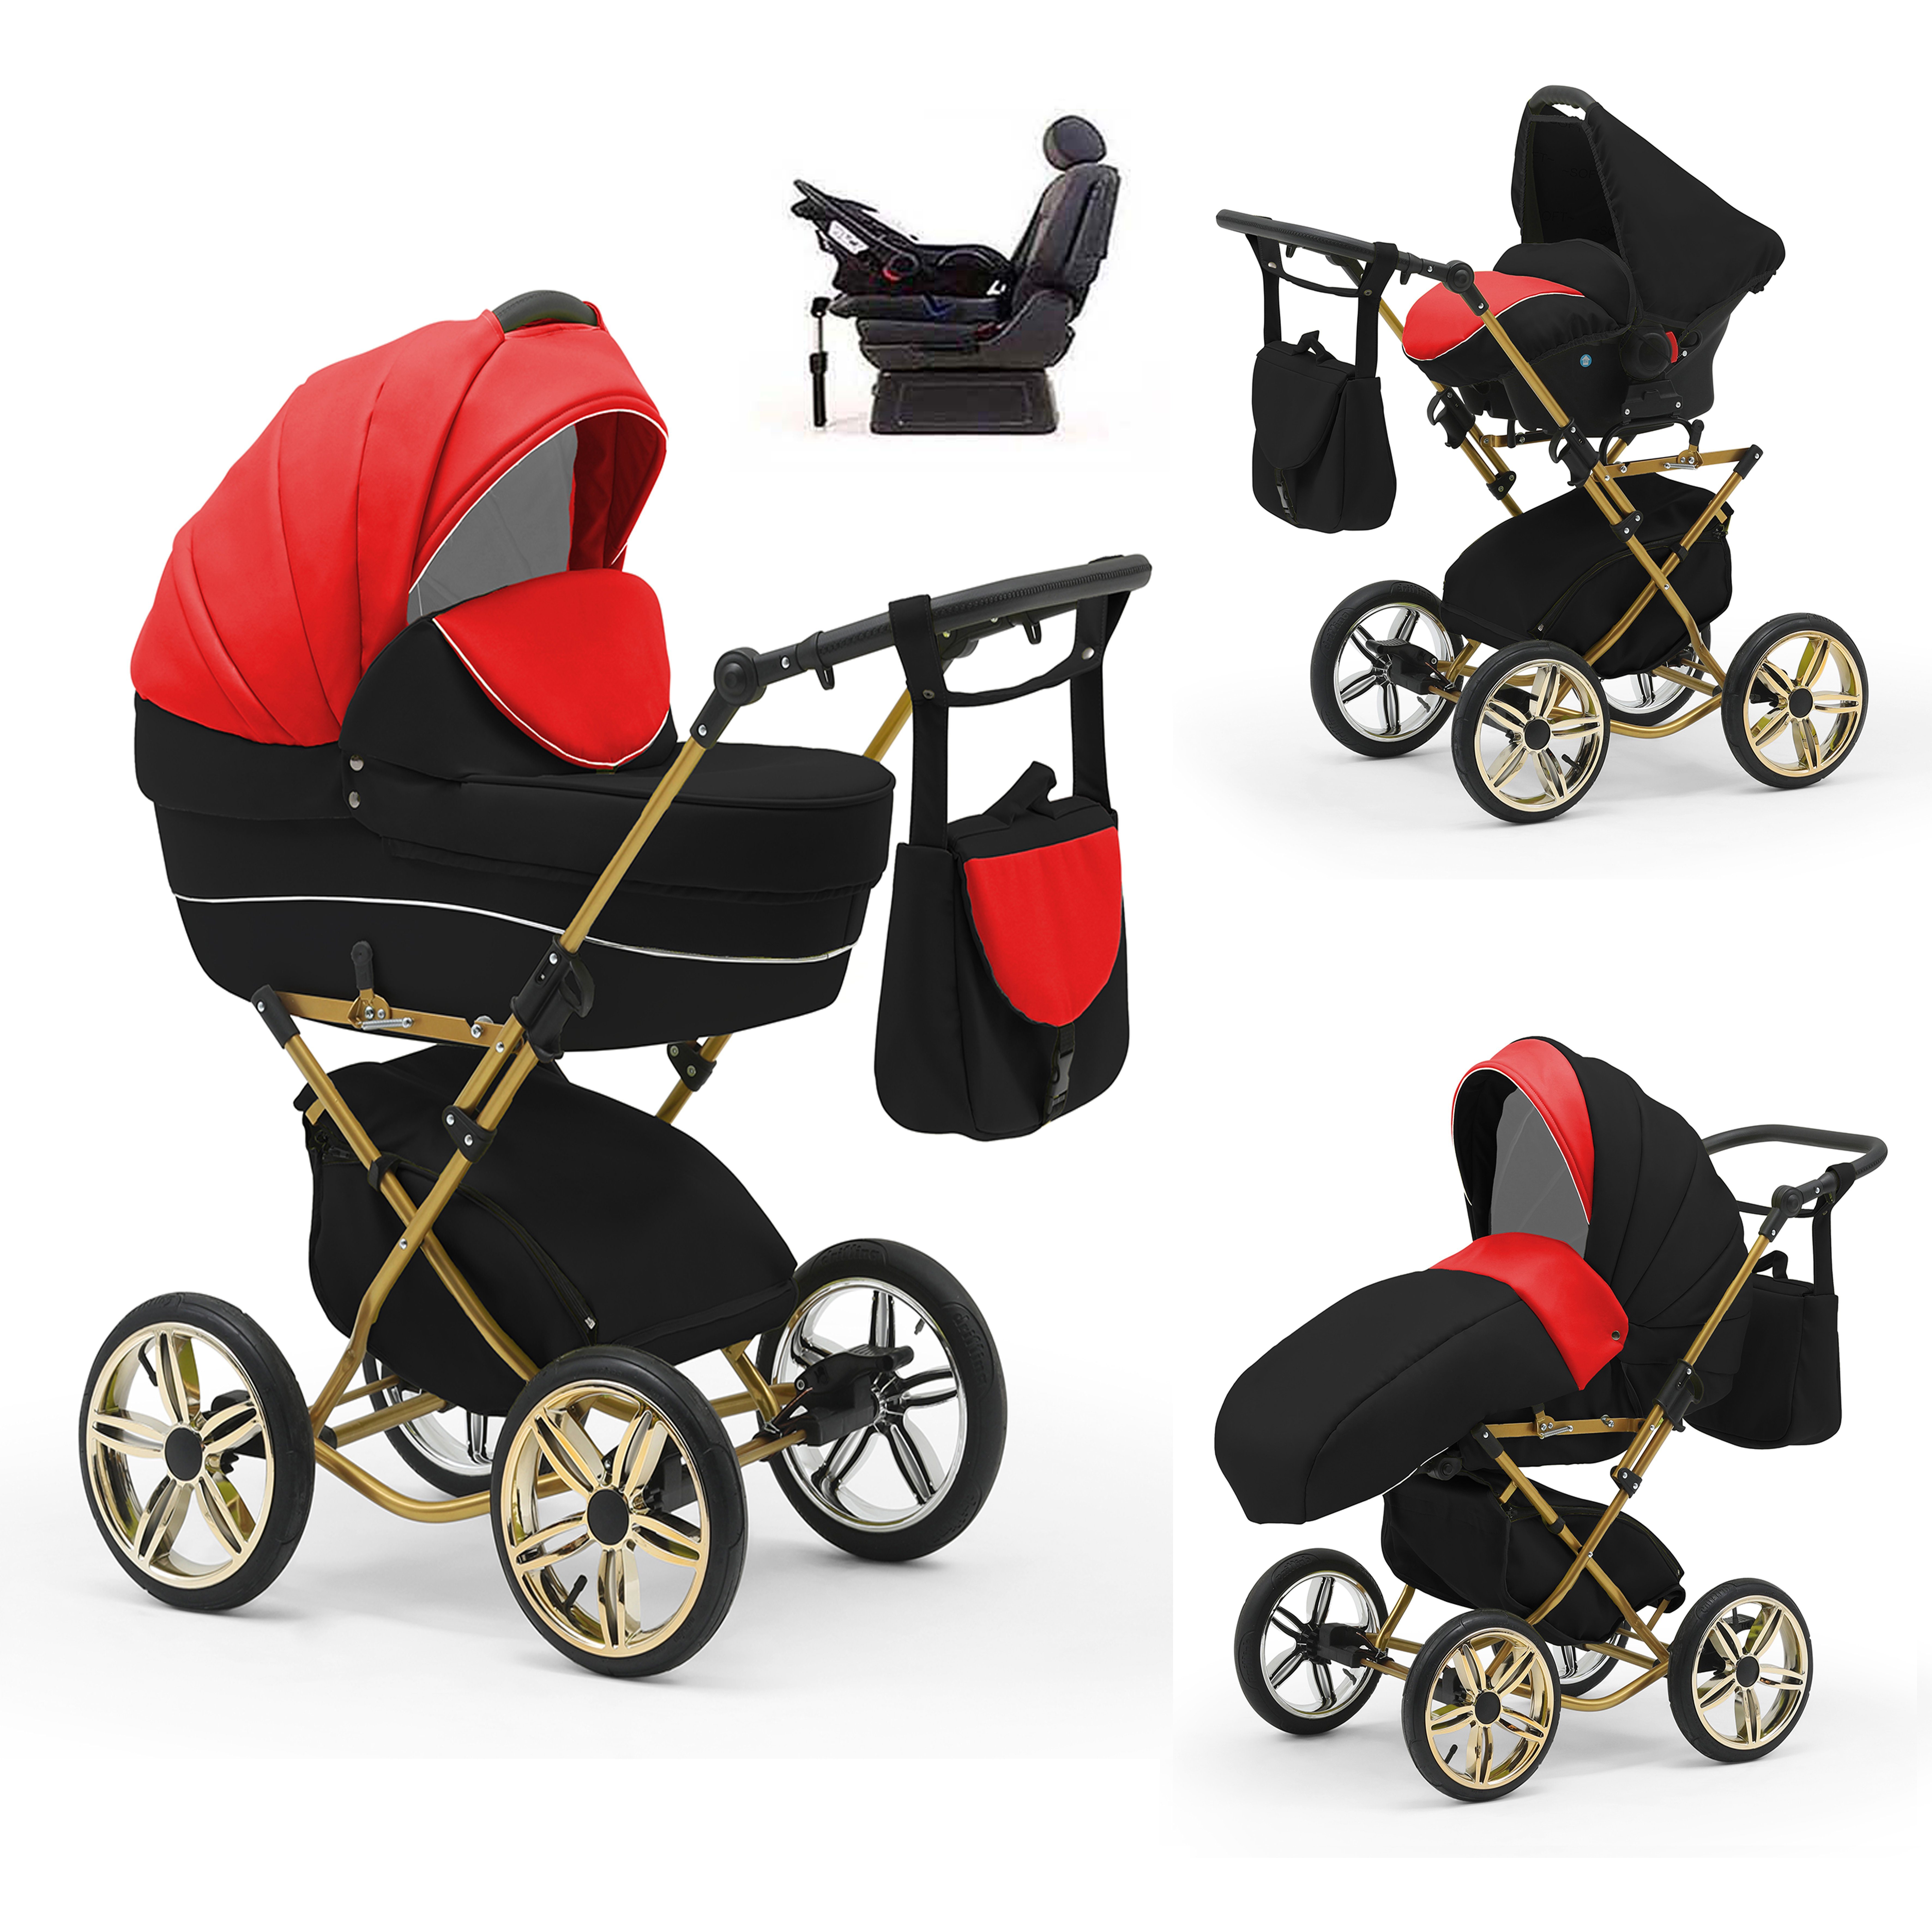 babies-on-wheels Kombi-Kinderwagen Sorento 4 in 1 inkl. Autositz und Iso Base - 14 Teile - in 10 Designs Rot-Schwarz